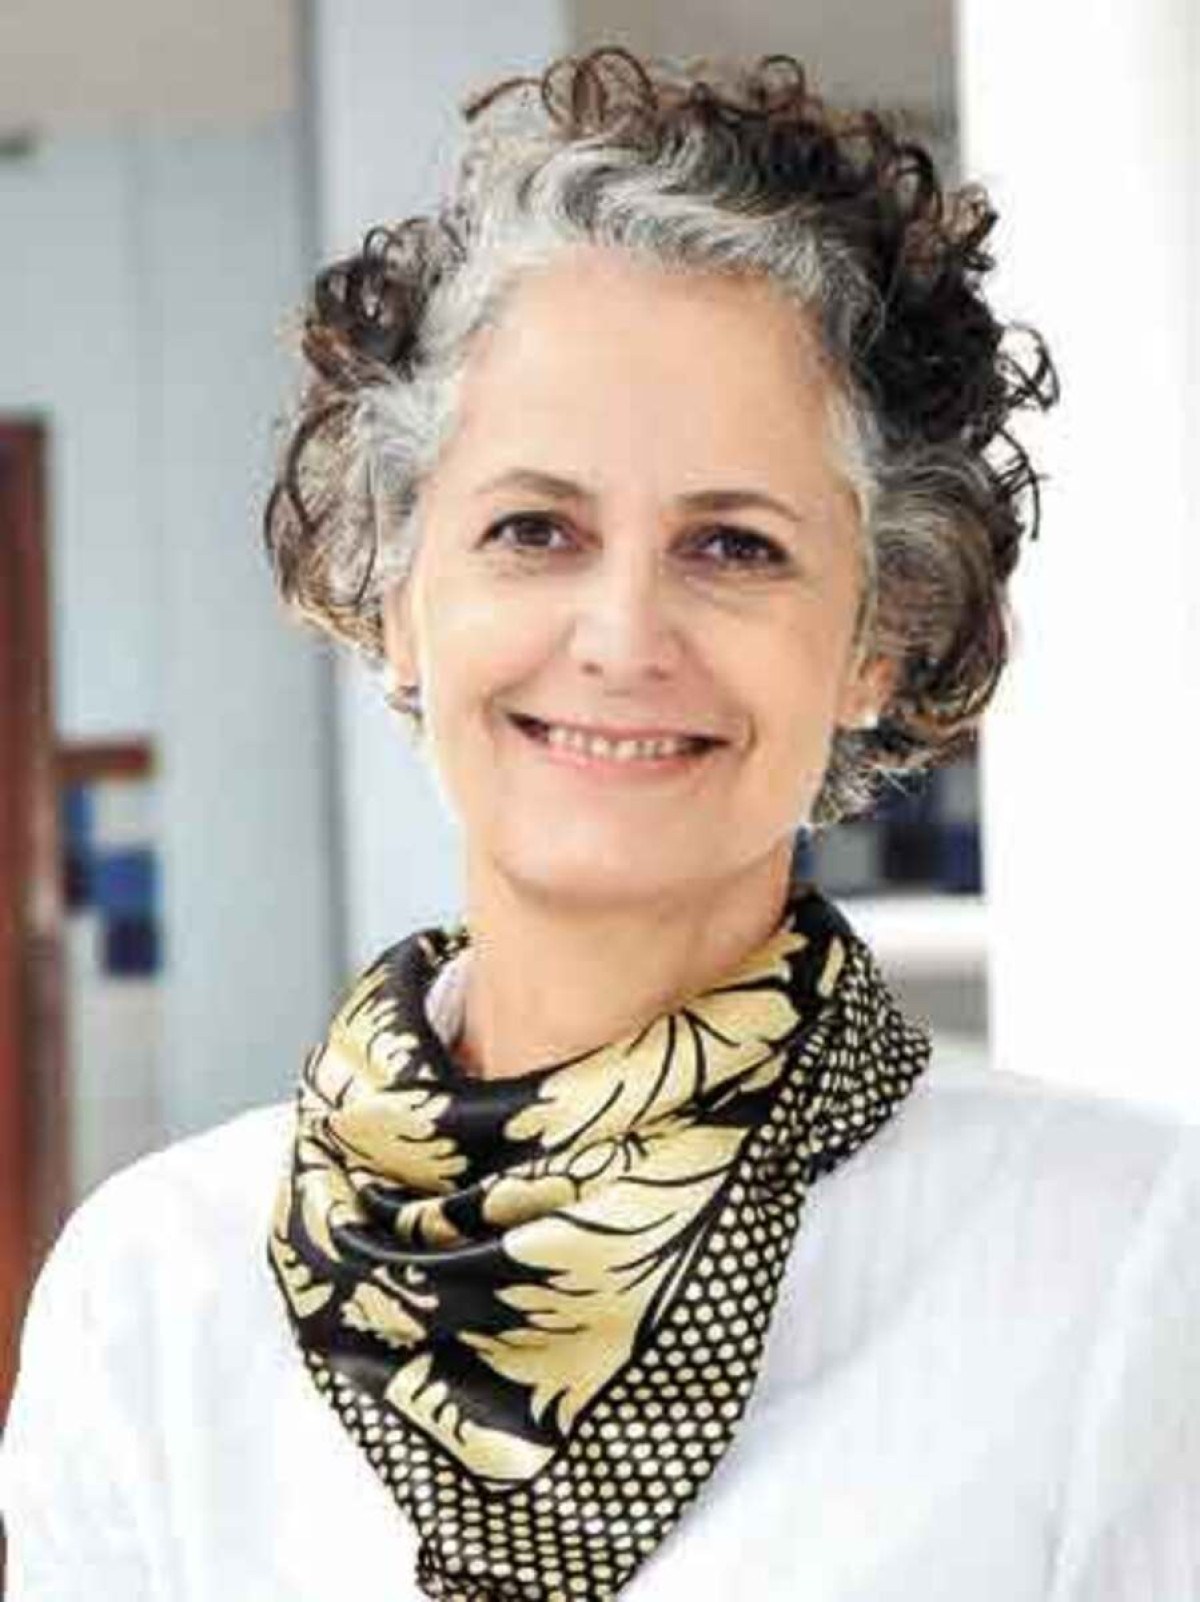 Aleluia Heringer Lisboa, Diretora de ASG (Ambiental, Social e Governança) do Colégio Santo Agostinho